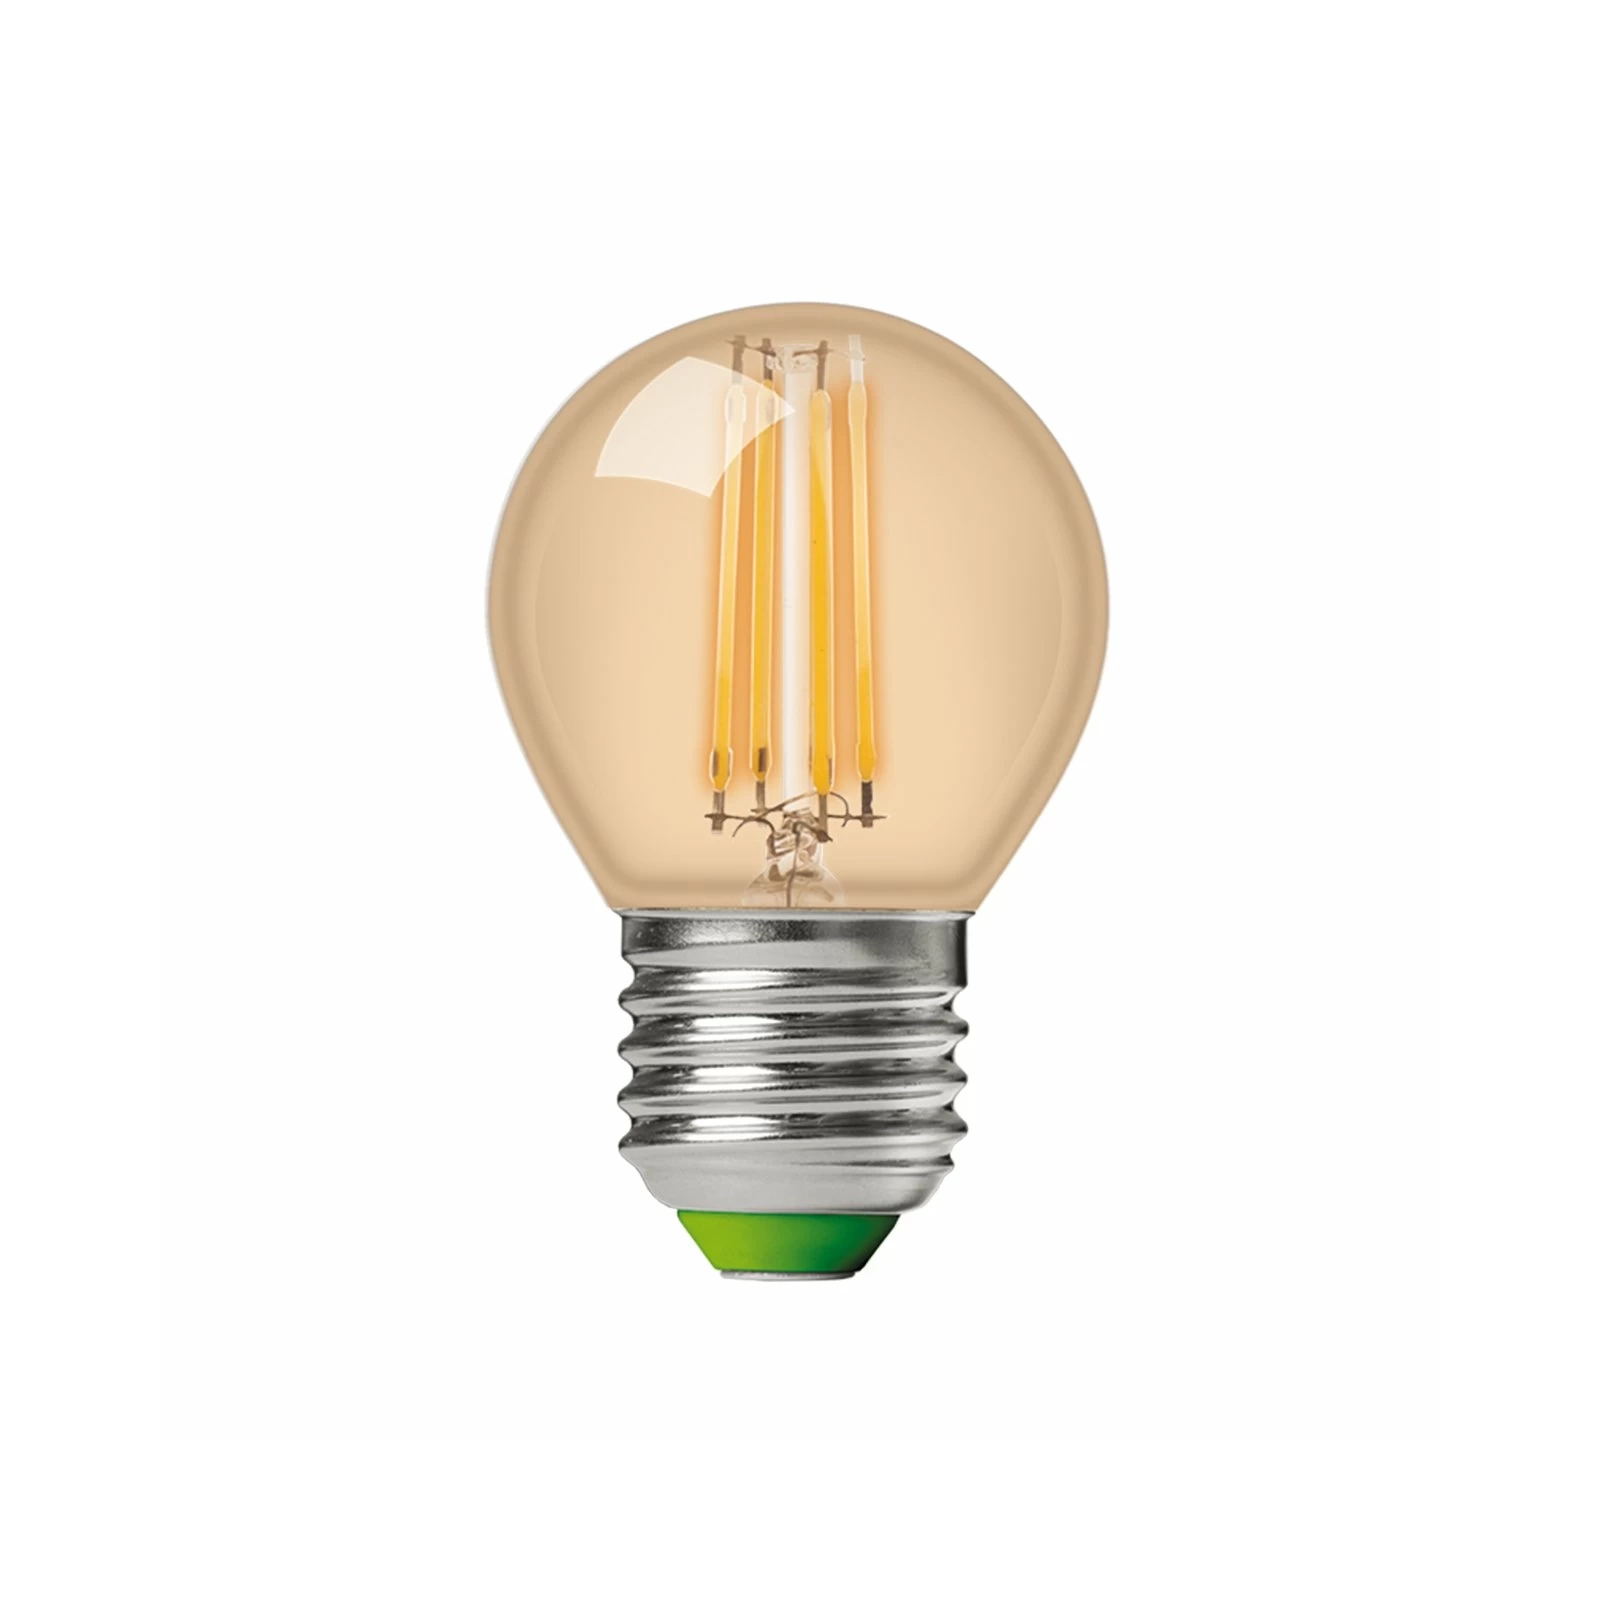 Лампочка Eurolamp LED G45 5W 530 Lm E27 4000K deco 2шт (MLP-LED-G45-05274(Amber)) зображення 2